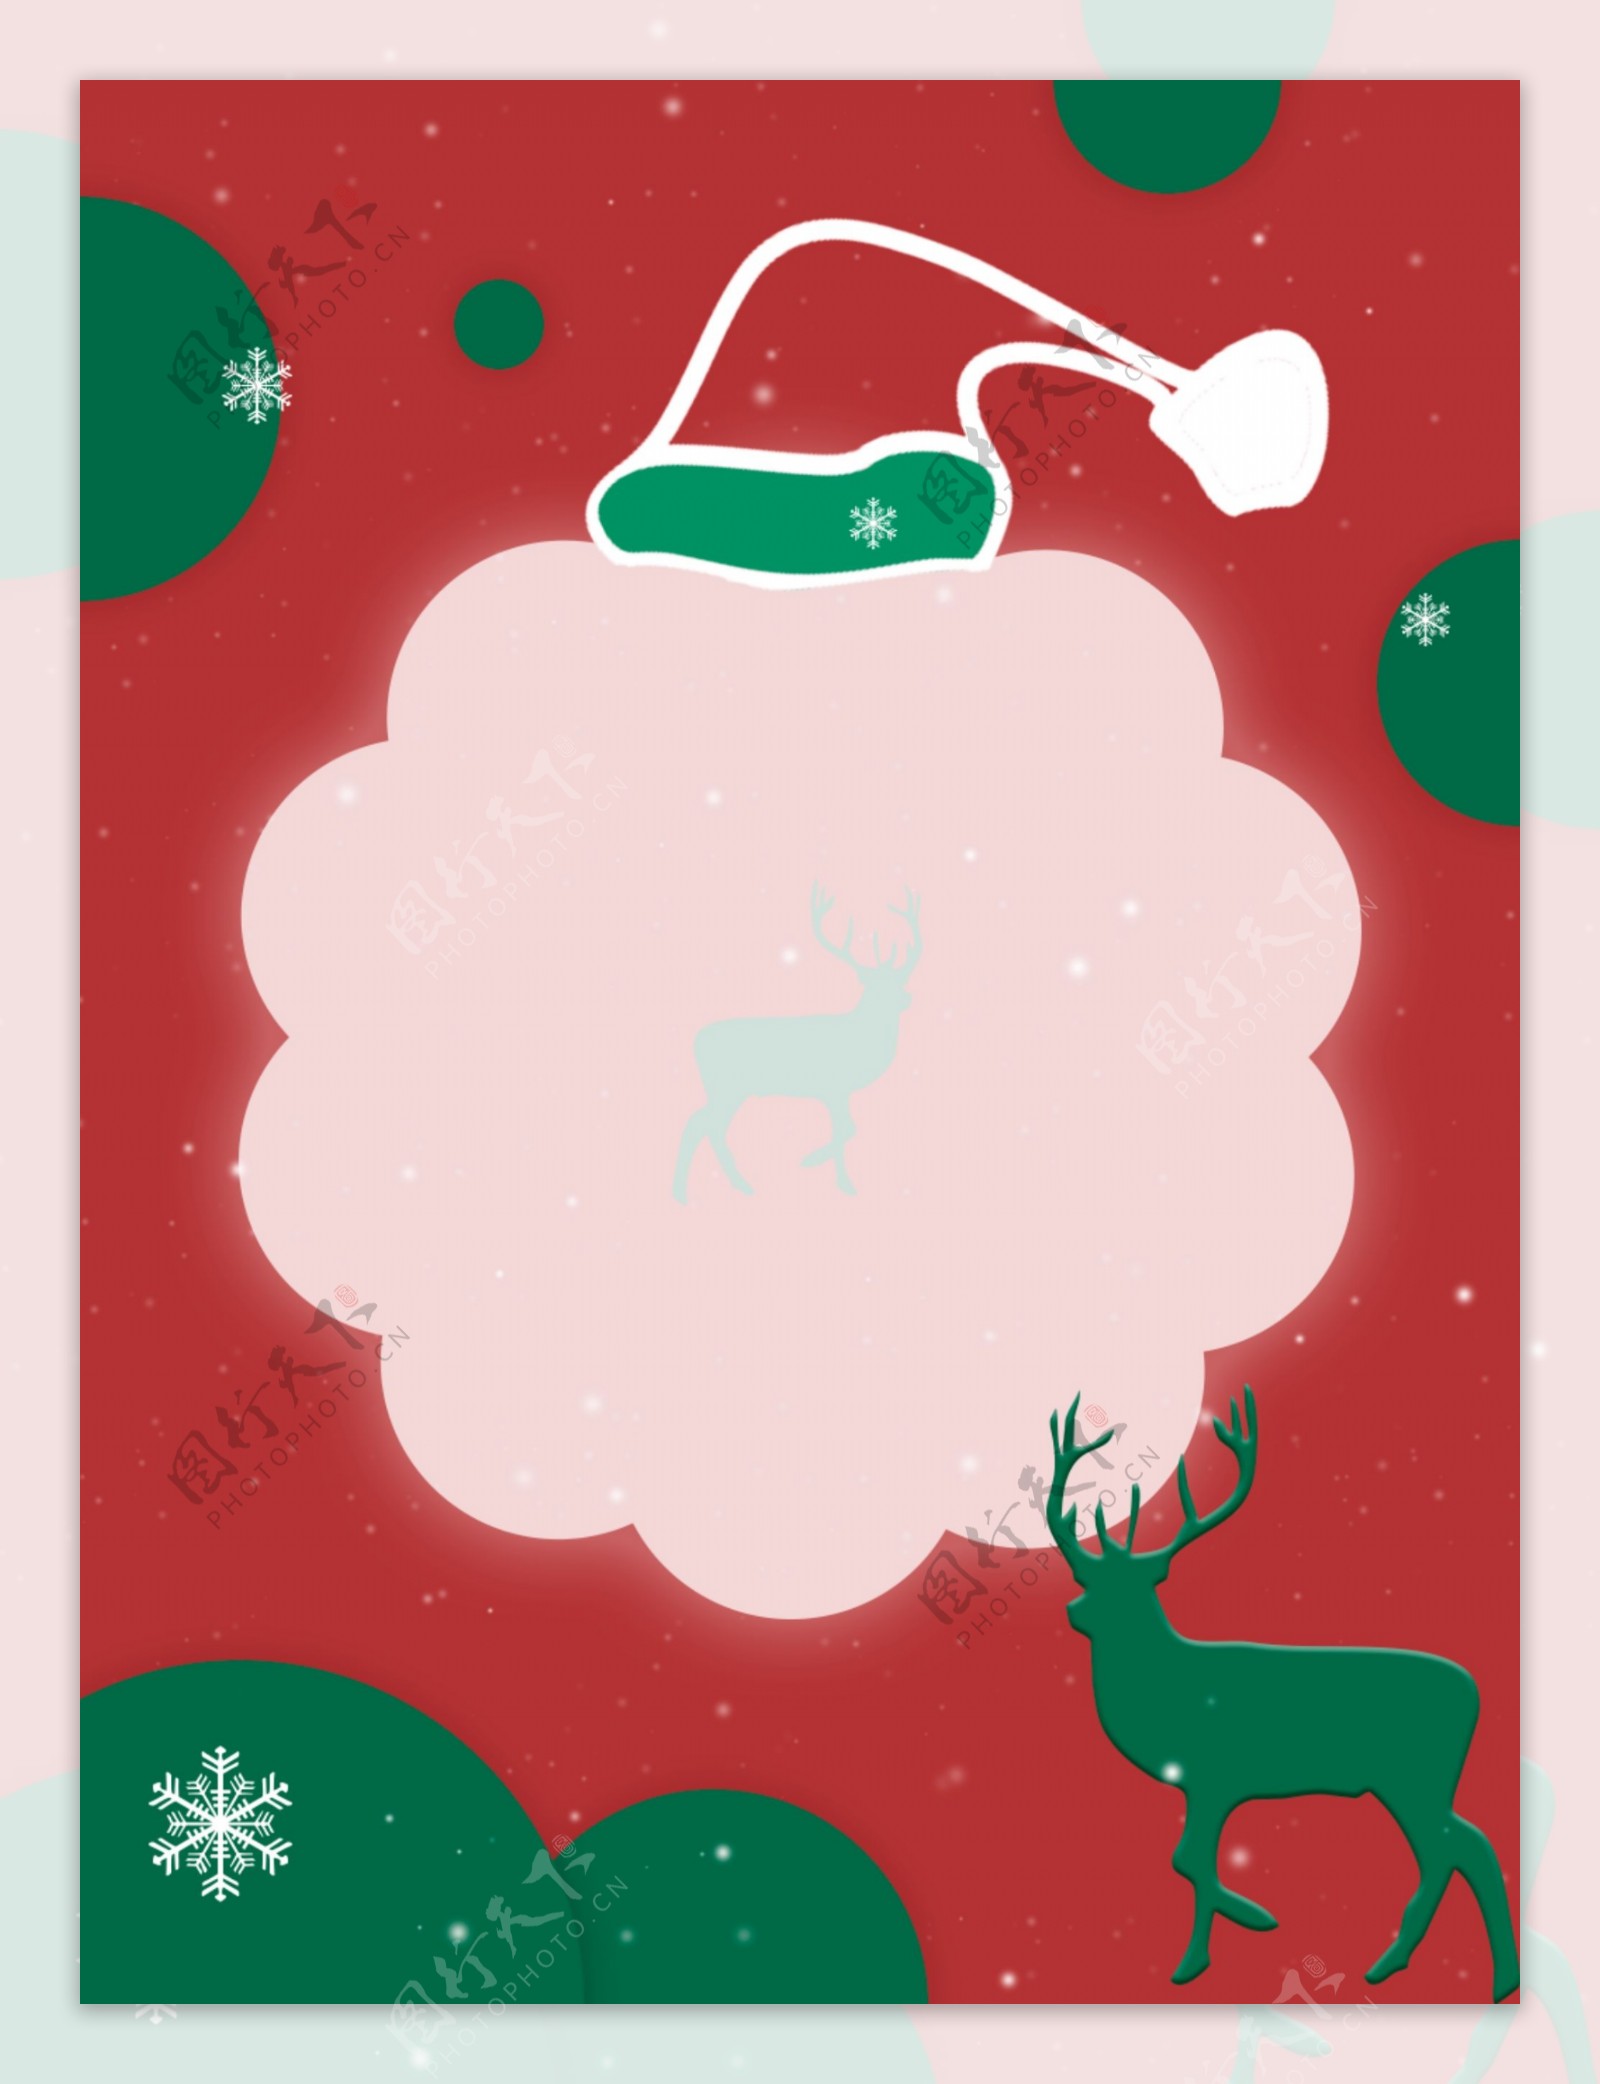 圣诞节红绿配色麋鹿雪花圣诞帽简约背景